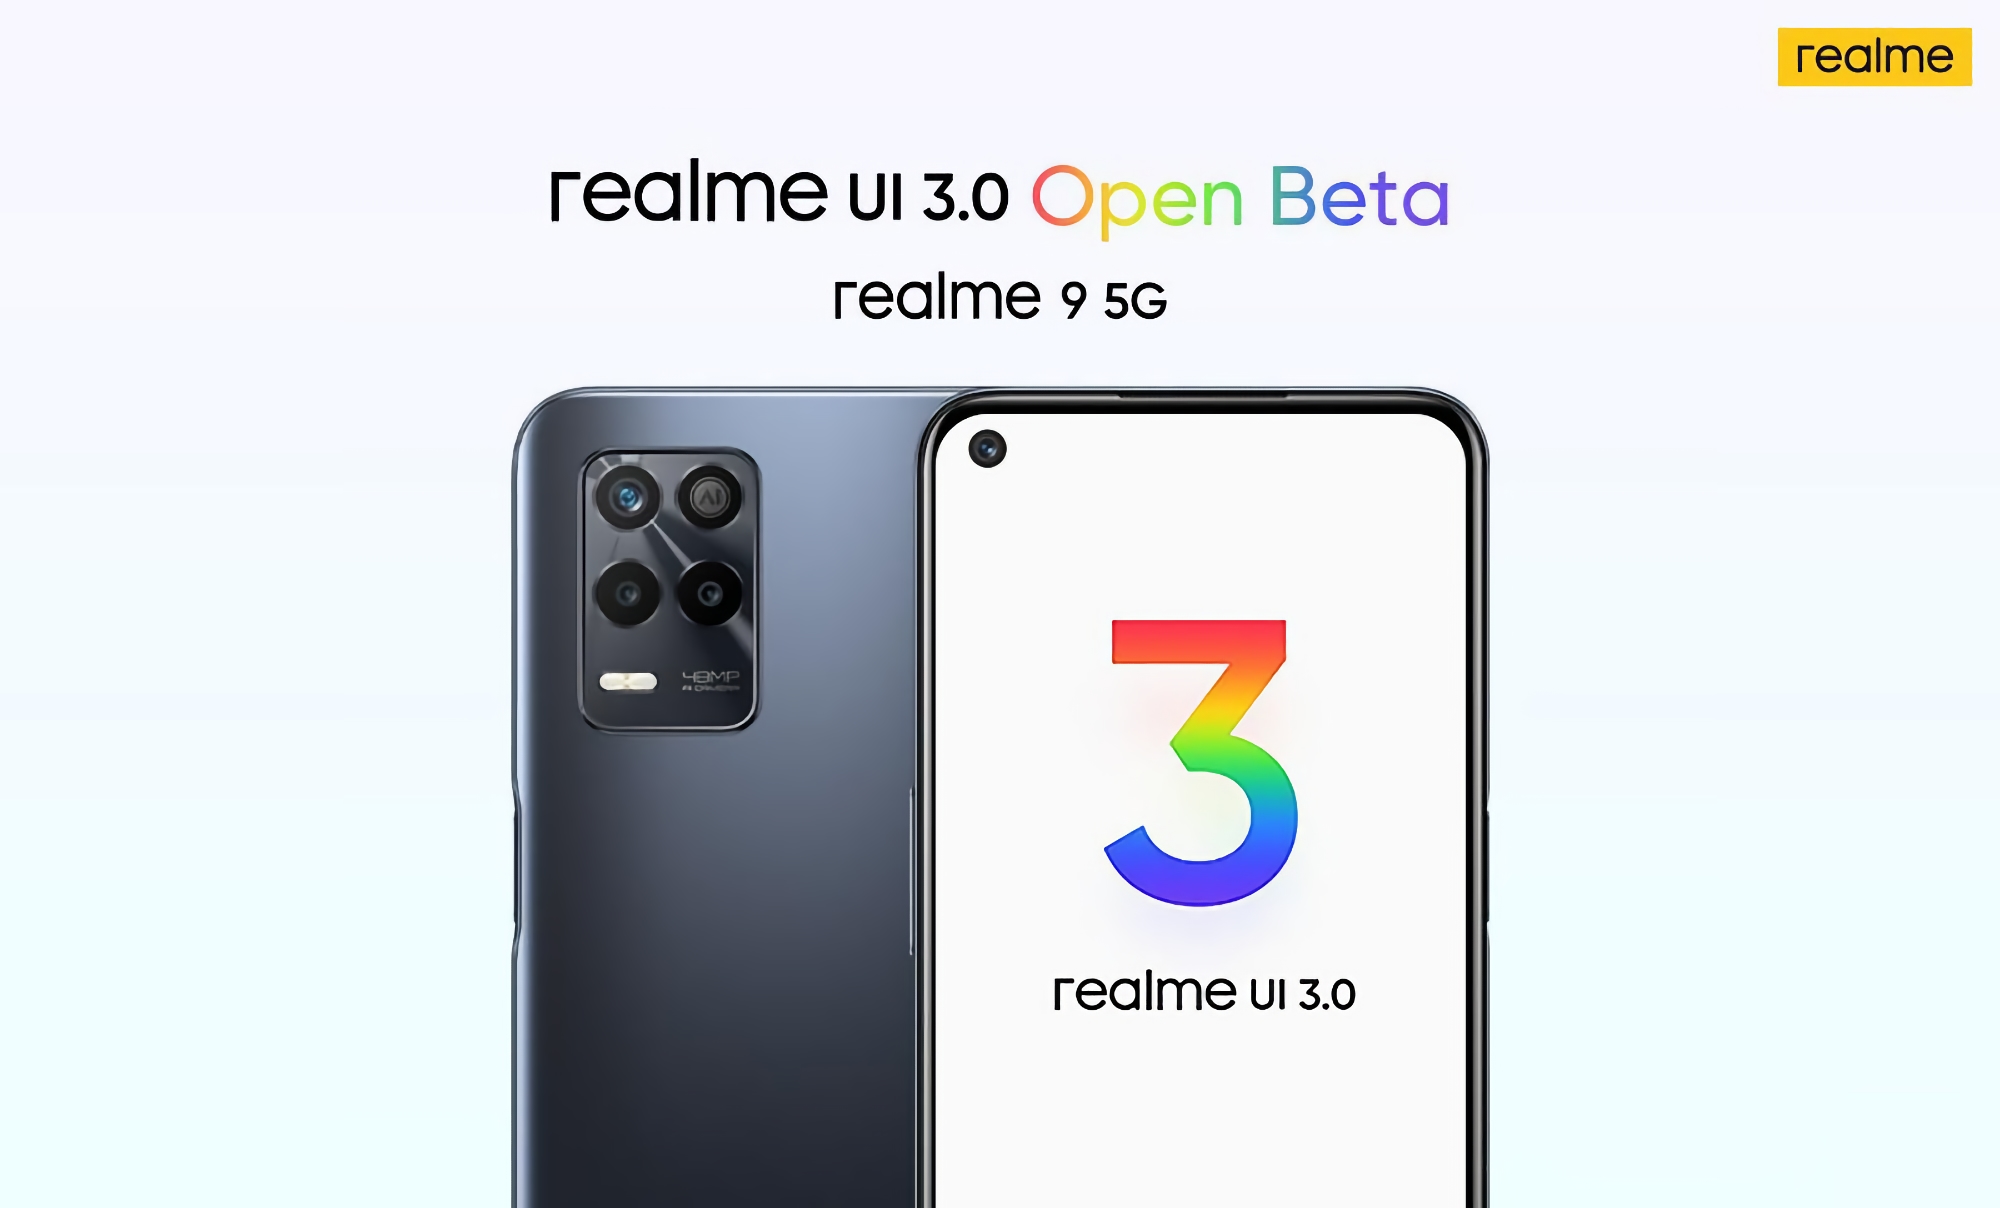 realme 9 5G otrzymało realme UI 3.0 beta oparte na Androidzie 12